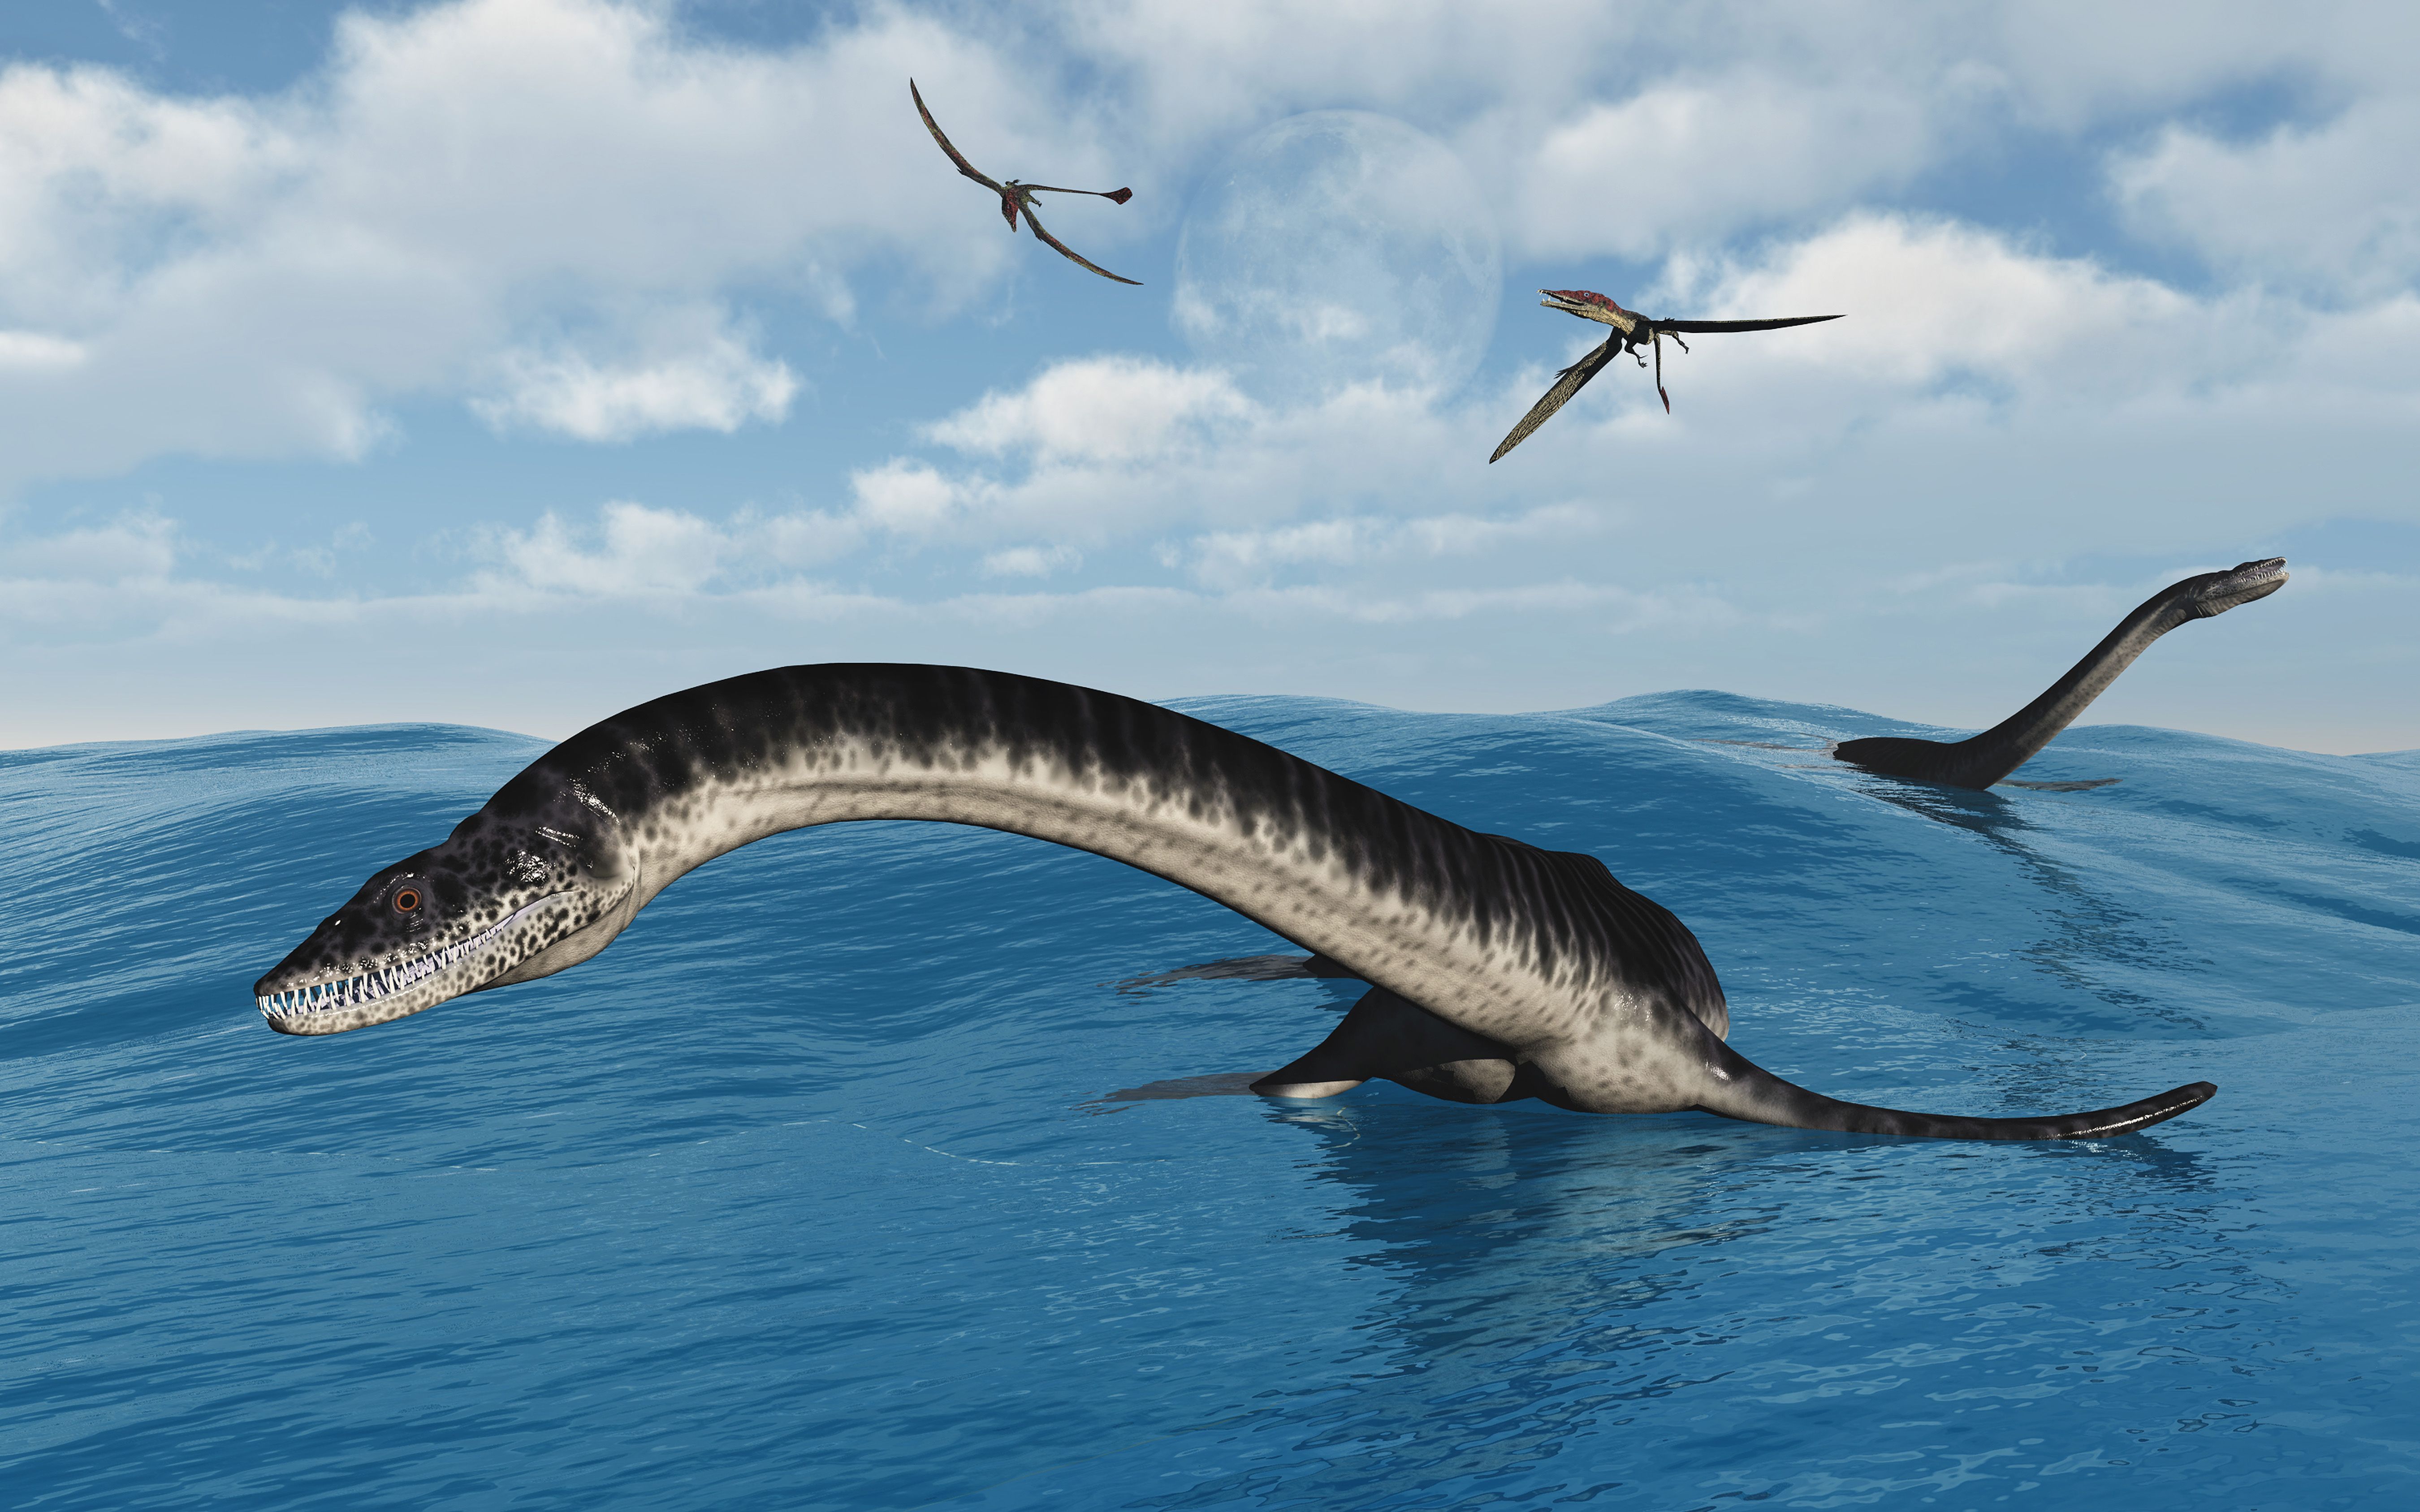 plesiosaur found alive